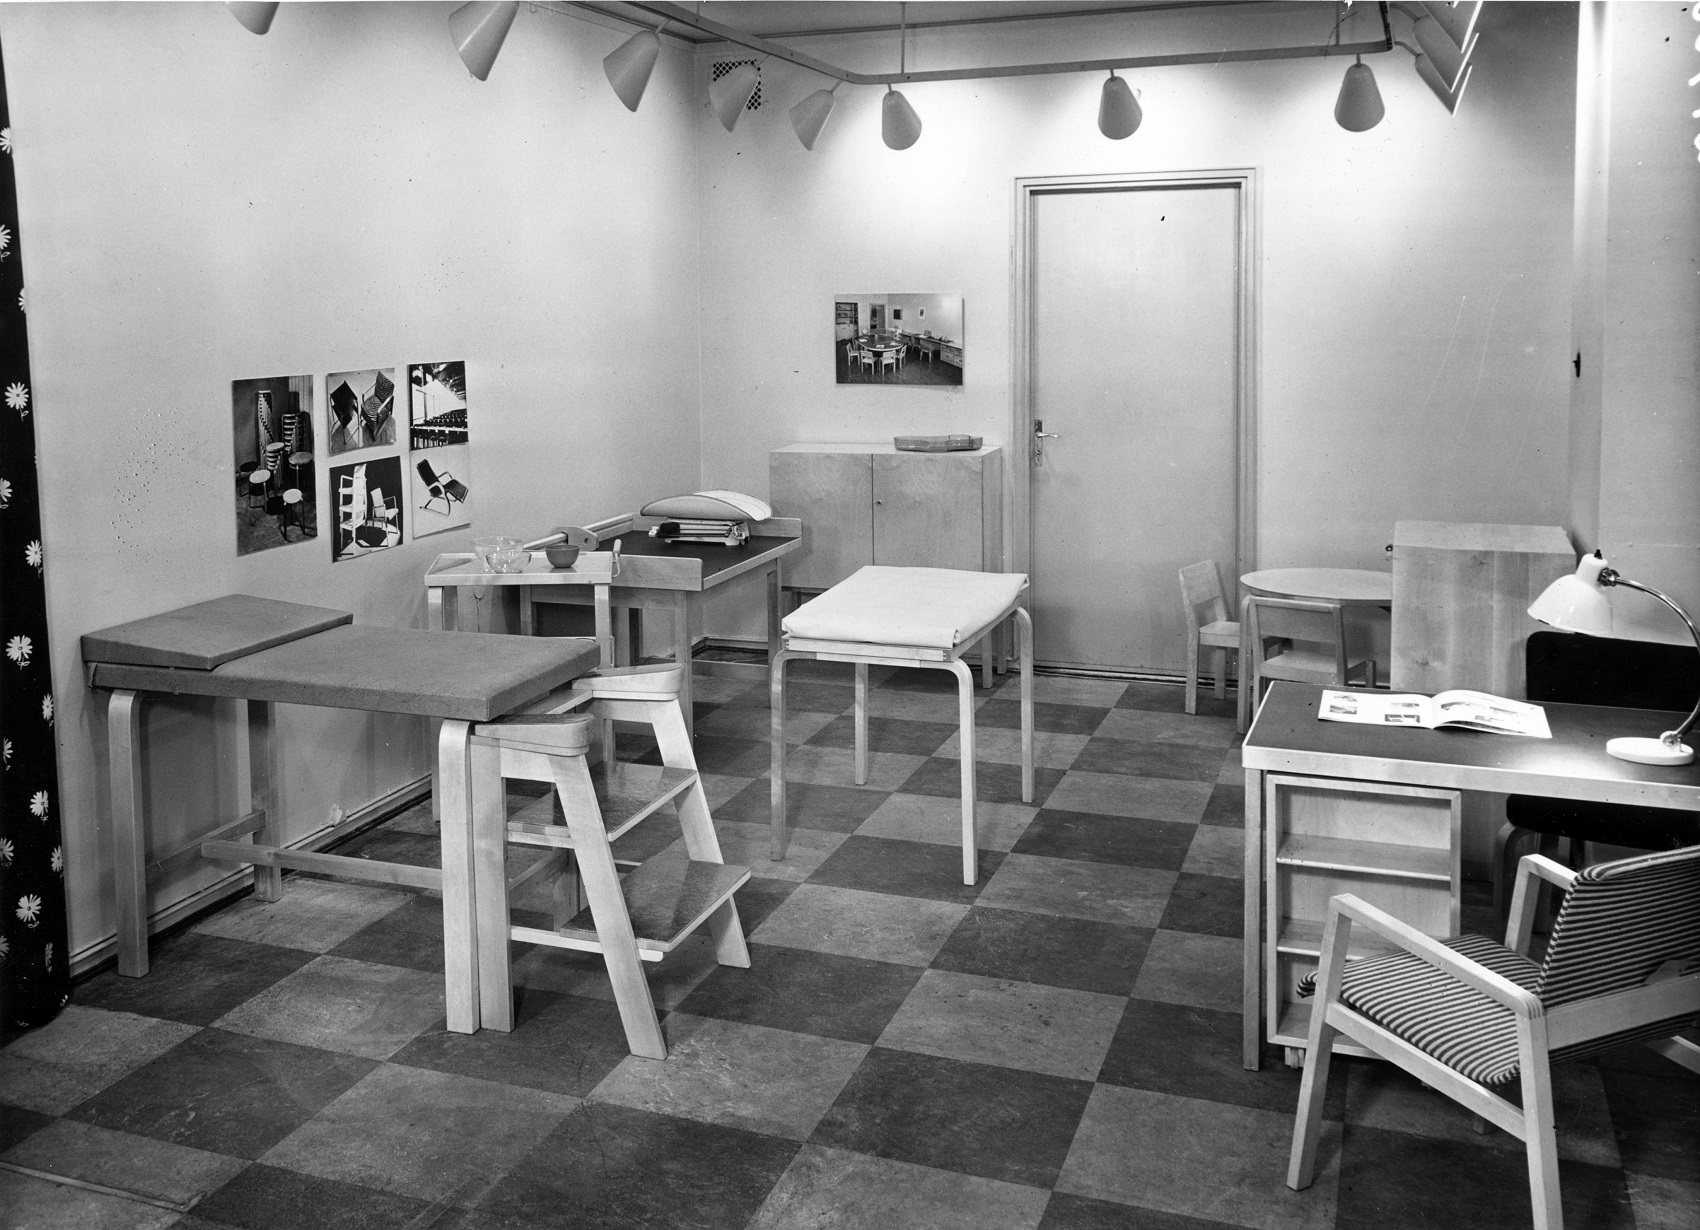 Äitiysneuvolan kalusteita. Artekin kuvakokoelma / Alvar Aalto -museo